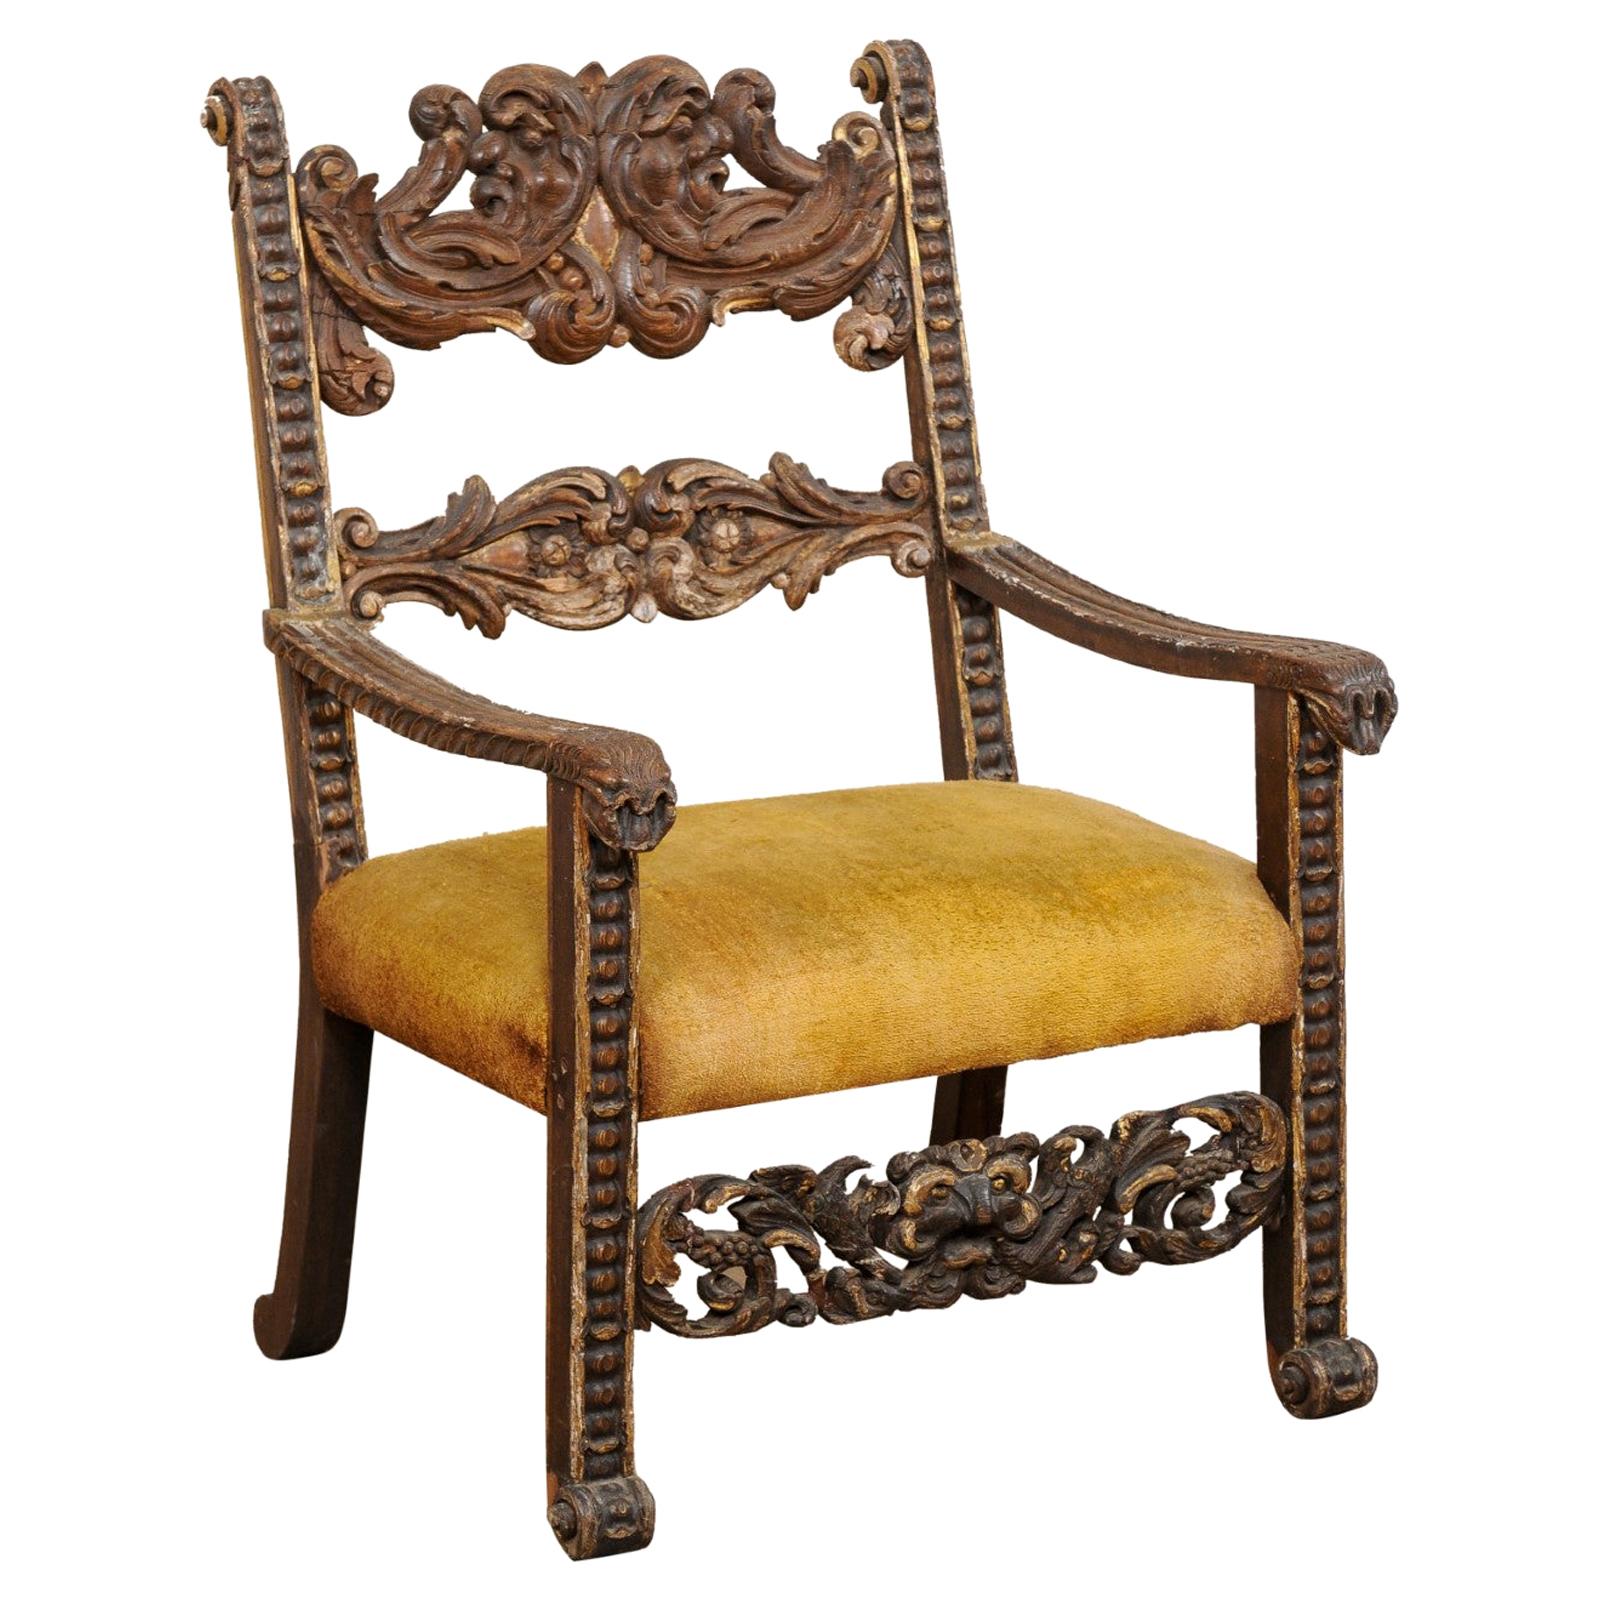 Magnifique fauteuil baroque italien du 18ème siècle avec détails sculptés de manière complexe